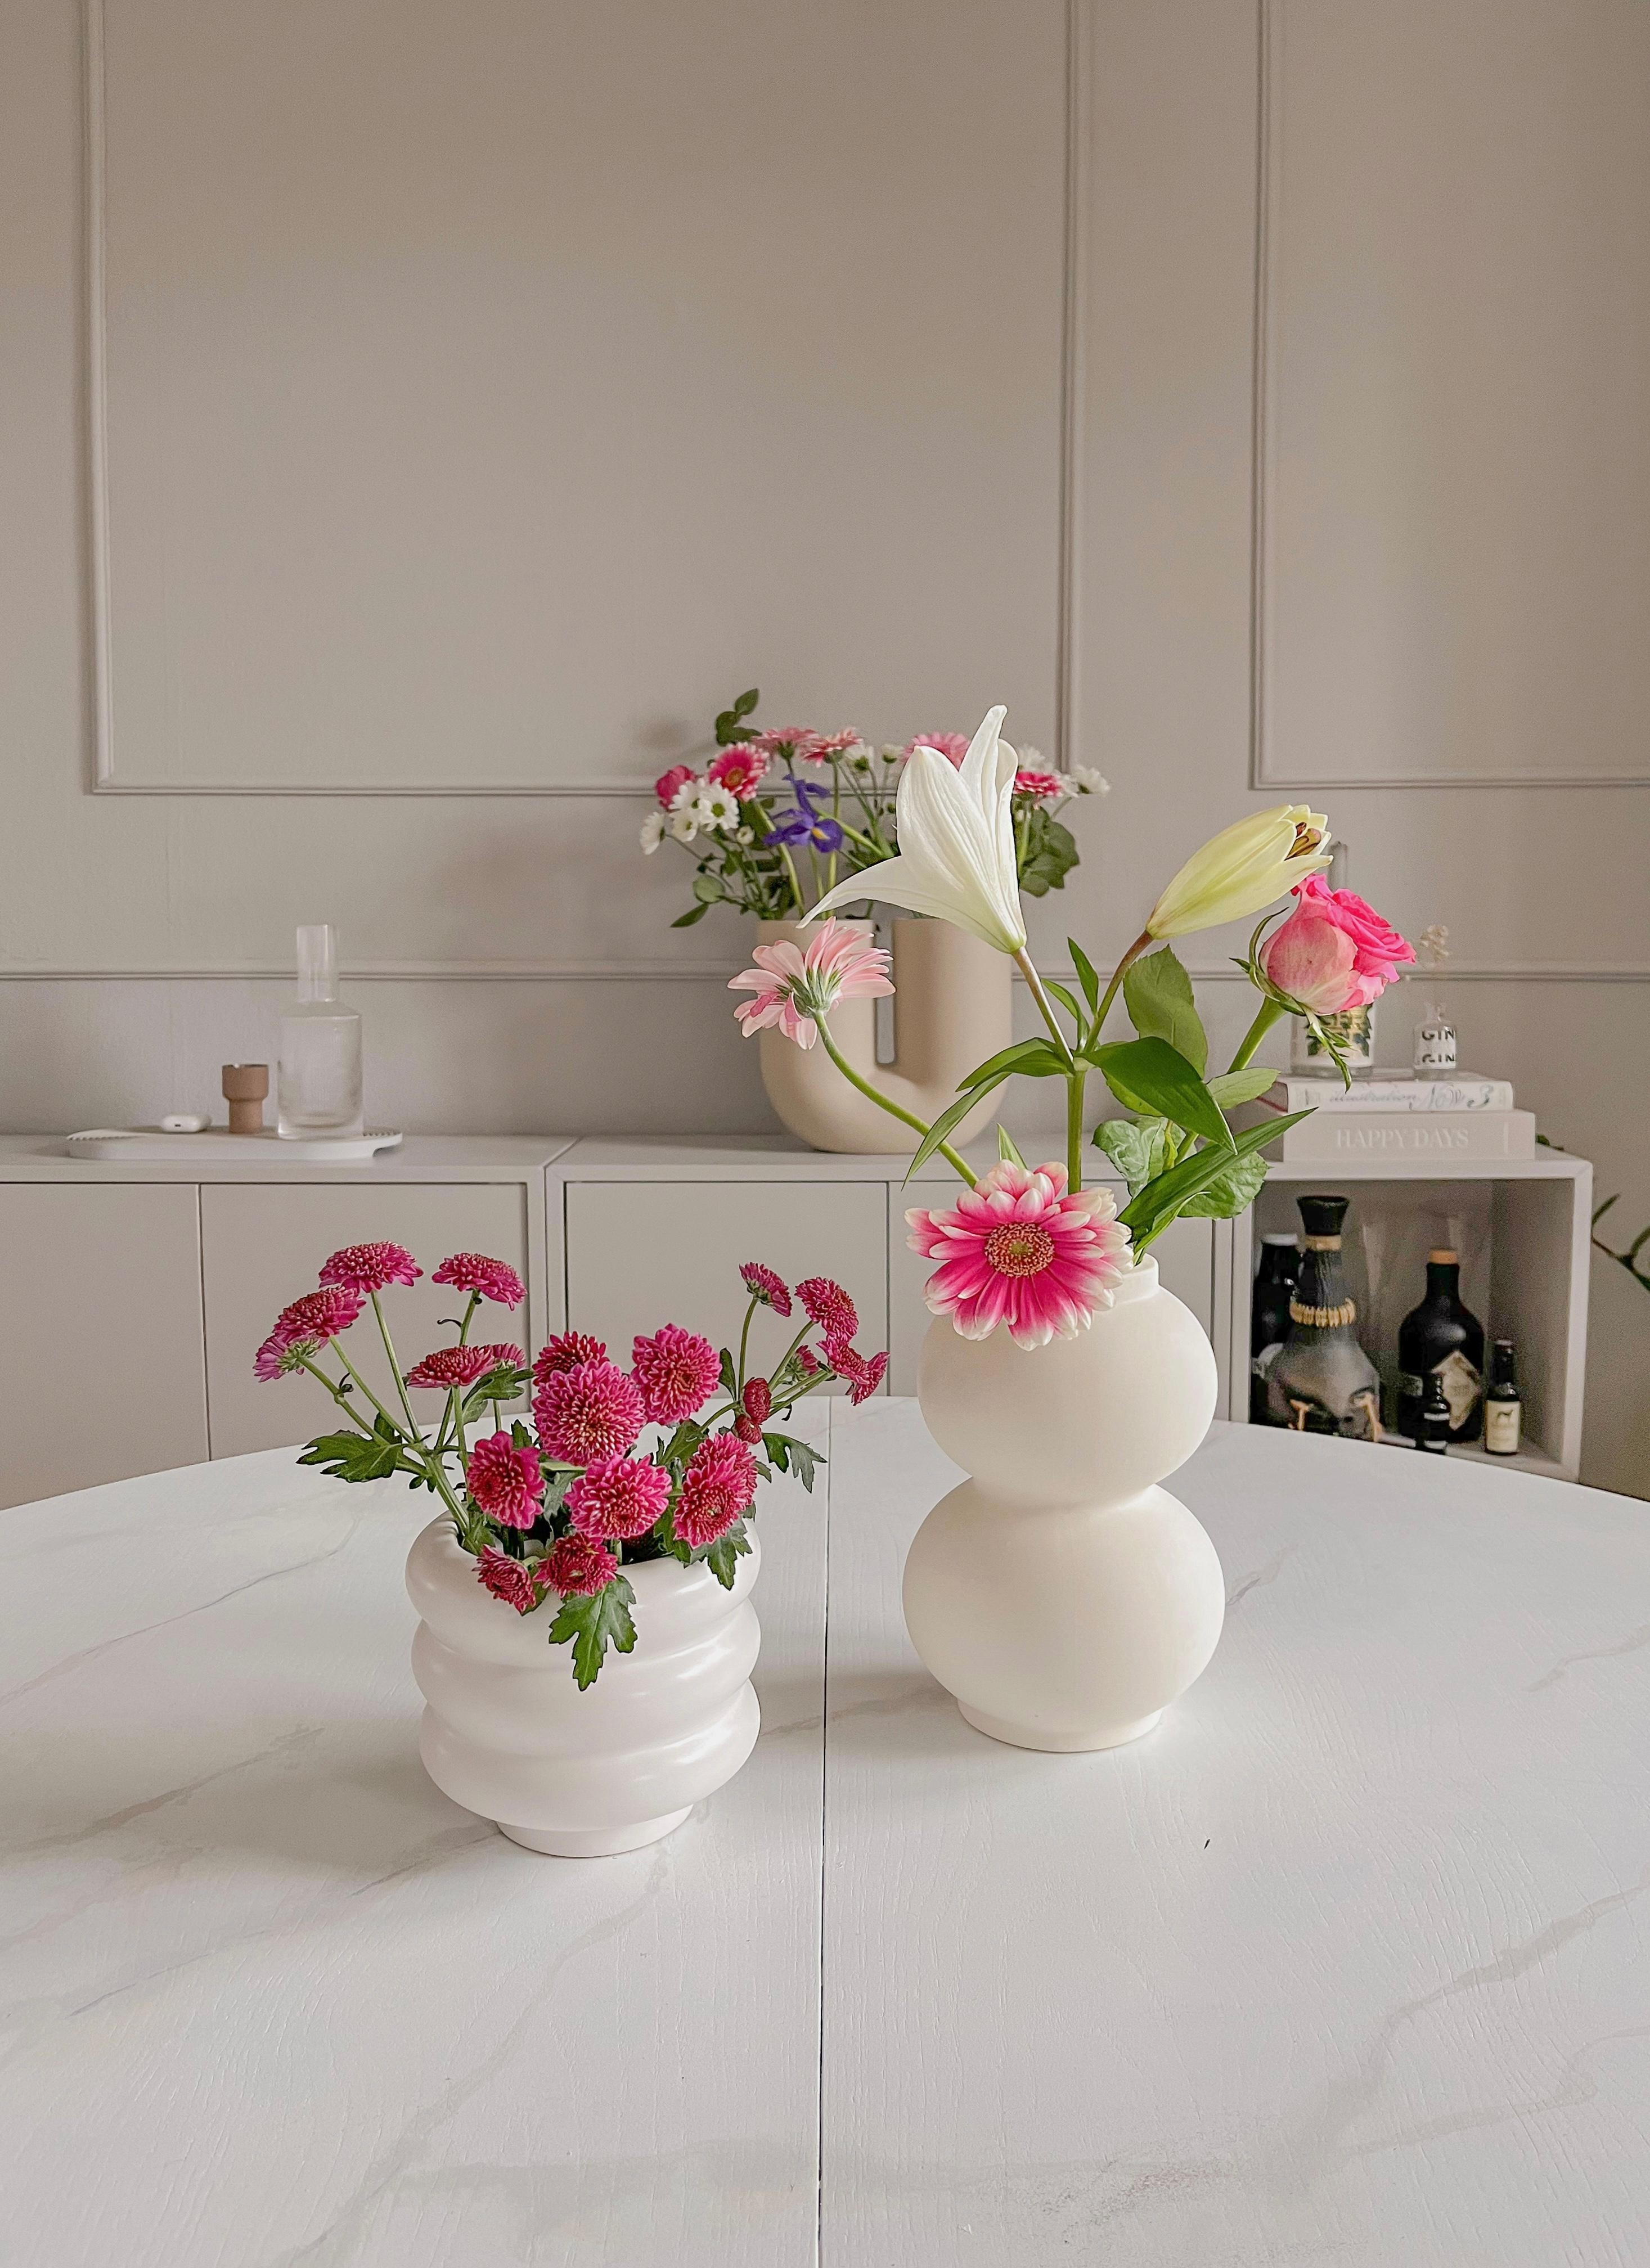 Blumengruß #frühling #vasen #muuto #bunt #marmor #tisch #diy #stuck #altbau #tischdeko #ikea #kommode #eket #blumen 